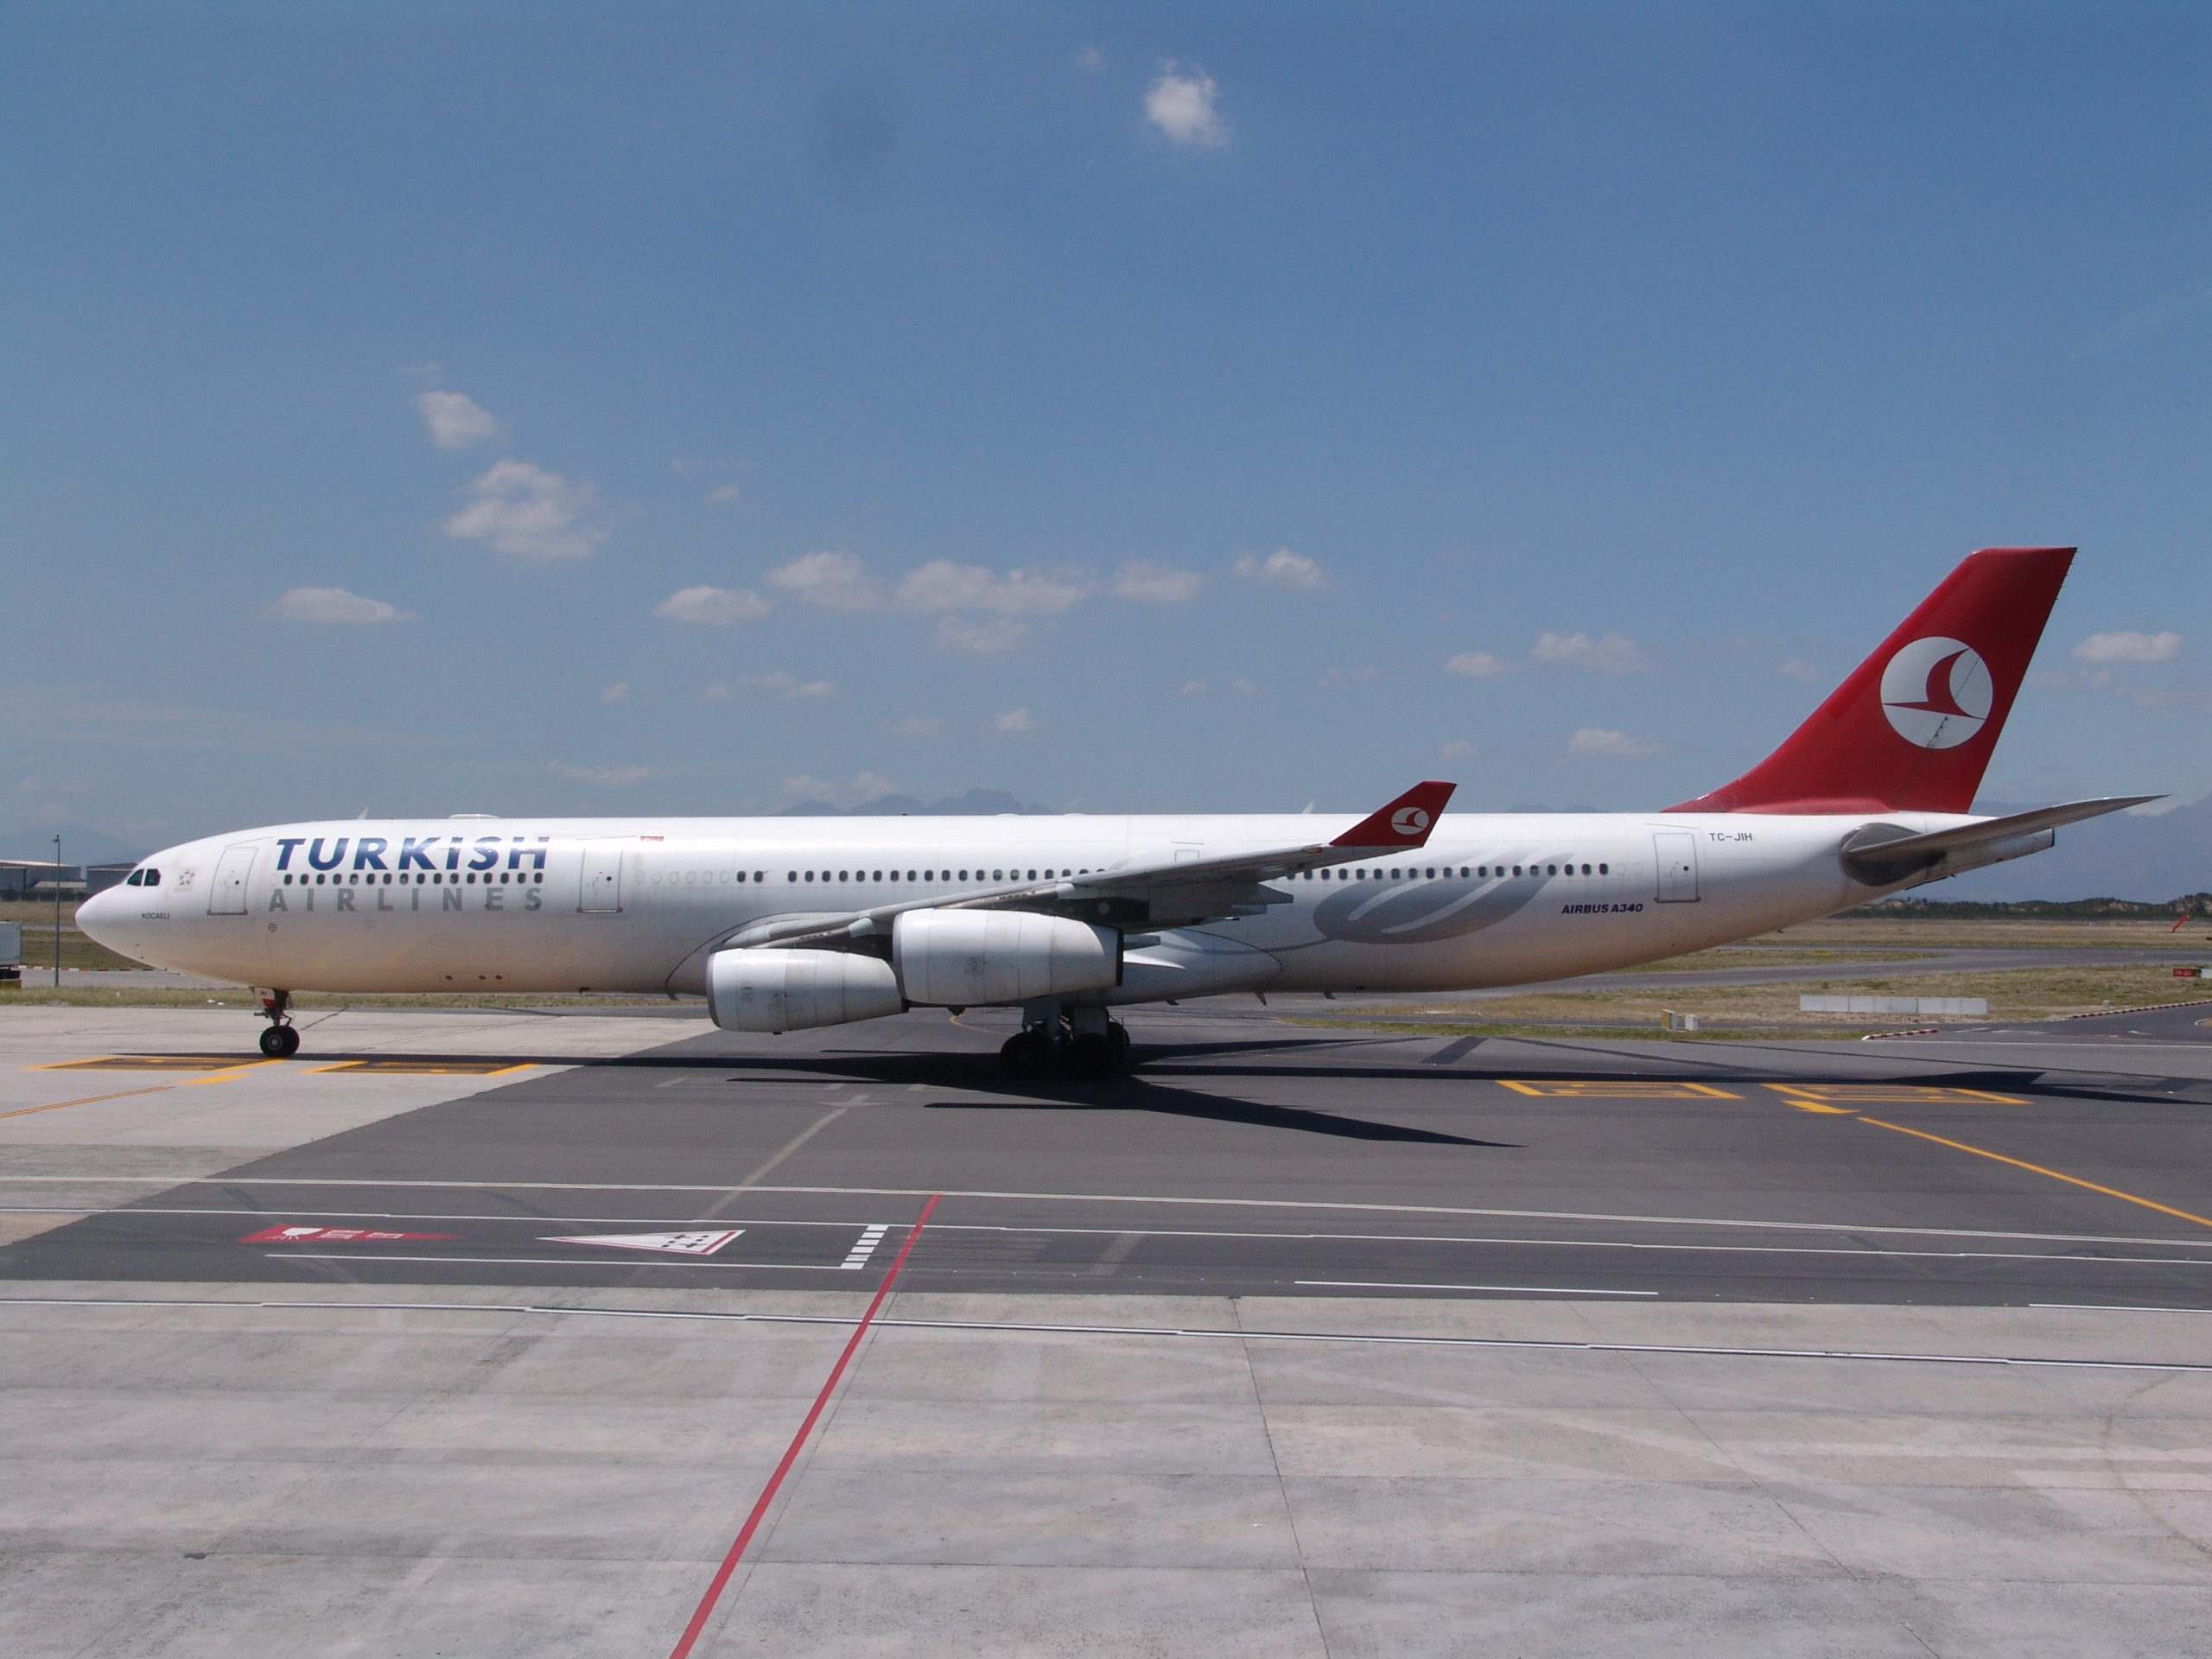 Ασυνόδευτες αποσκευές βρέθηκαν στο αεροσκάφος της Turkish Airlines